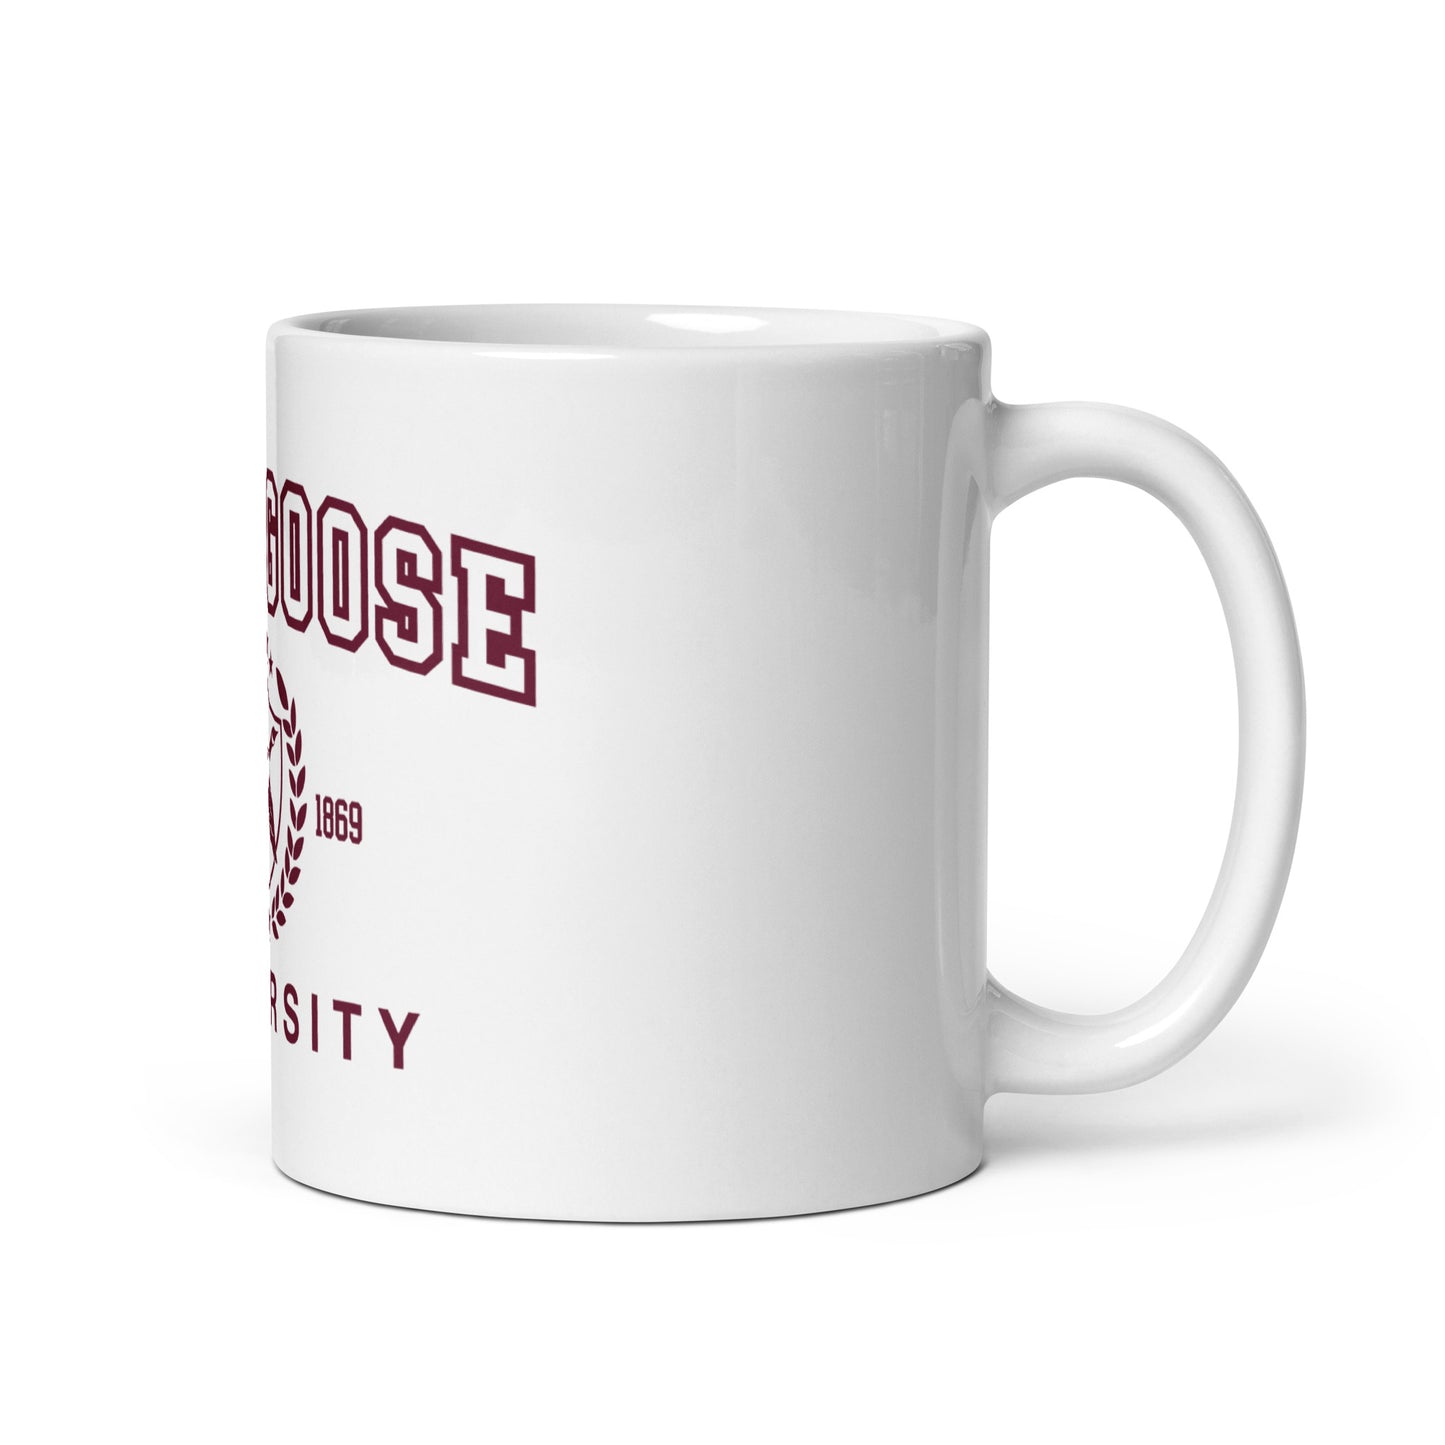 Silly Goose University mug